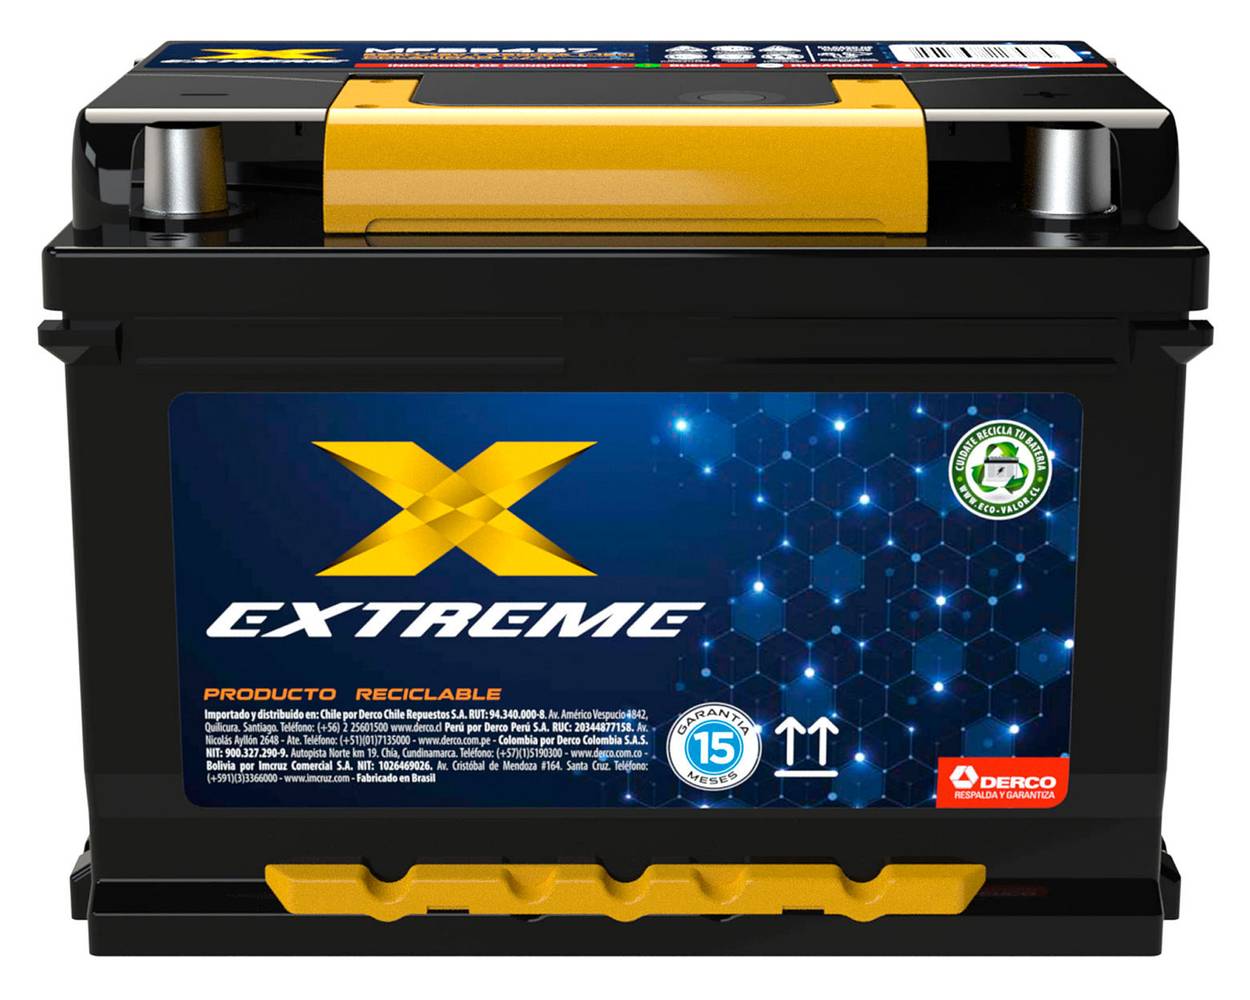 Extreme batería 55a 420cca derecho mf55457 (1 u)